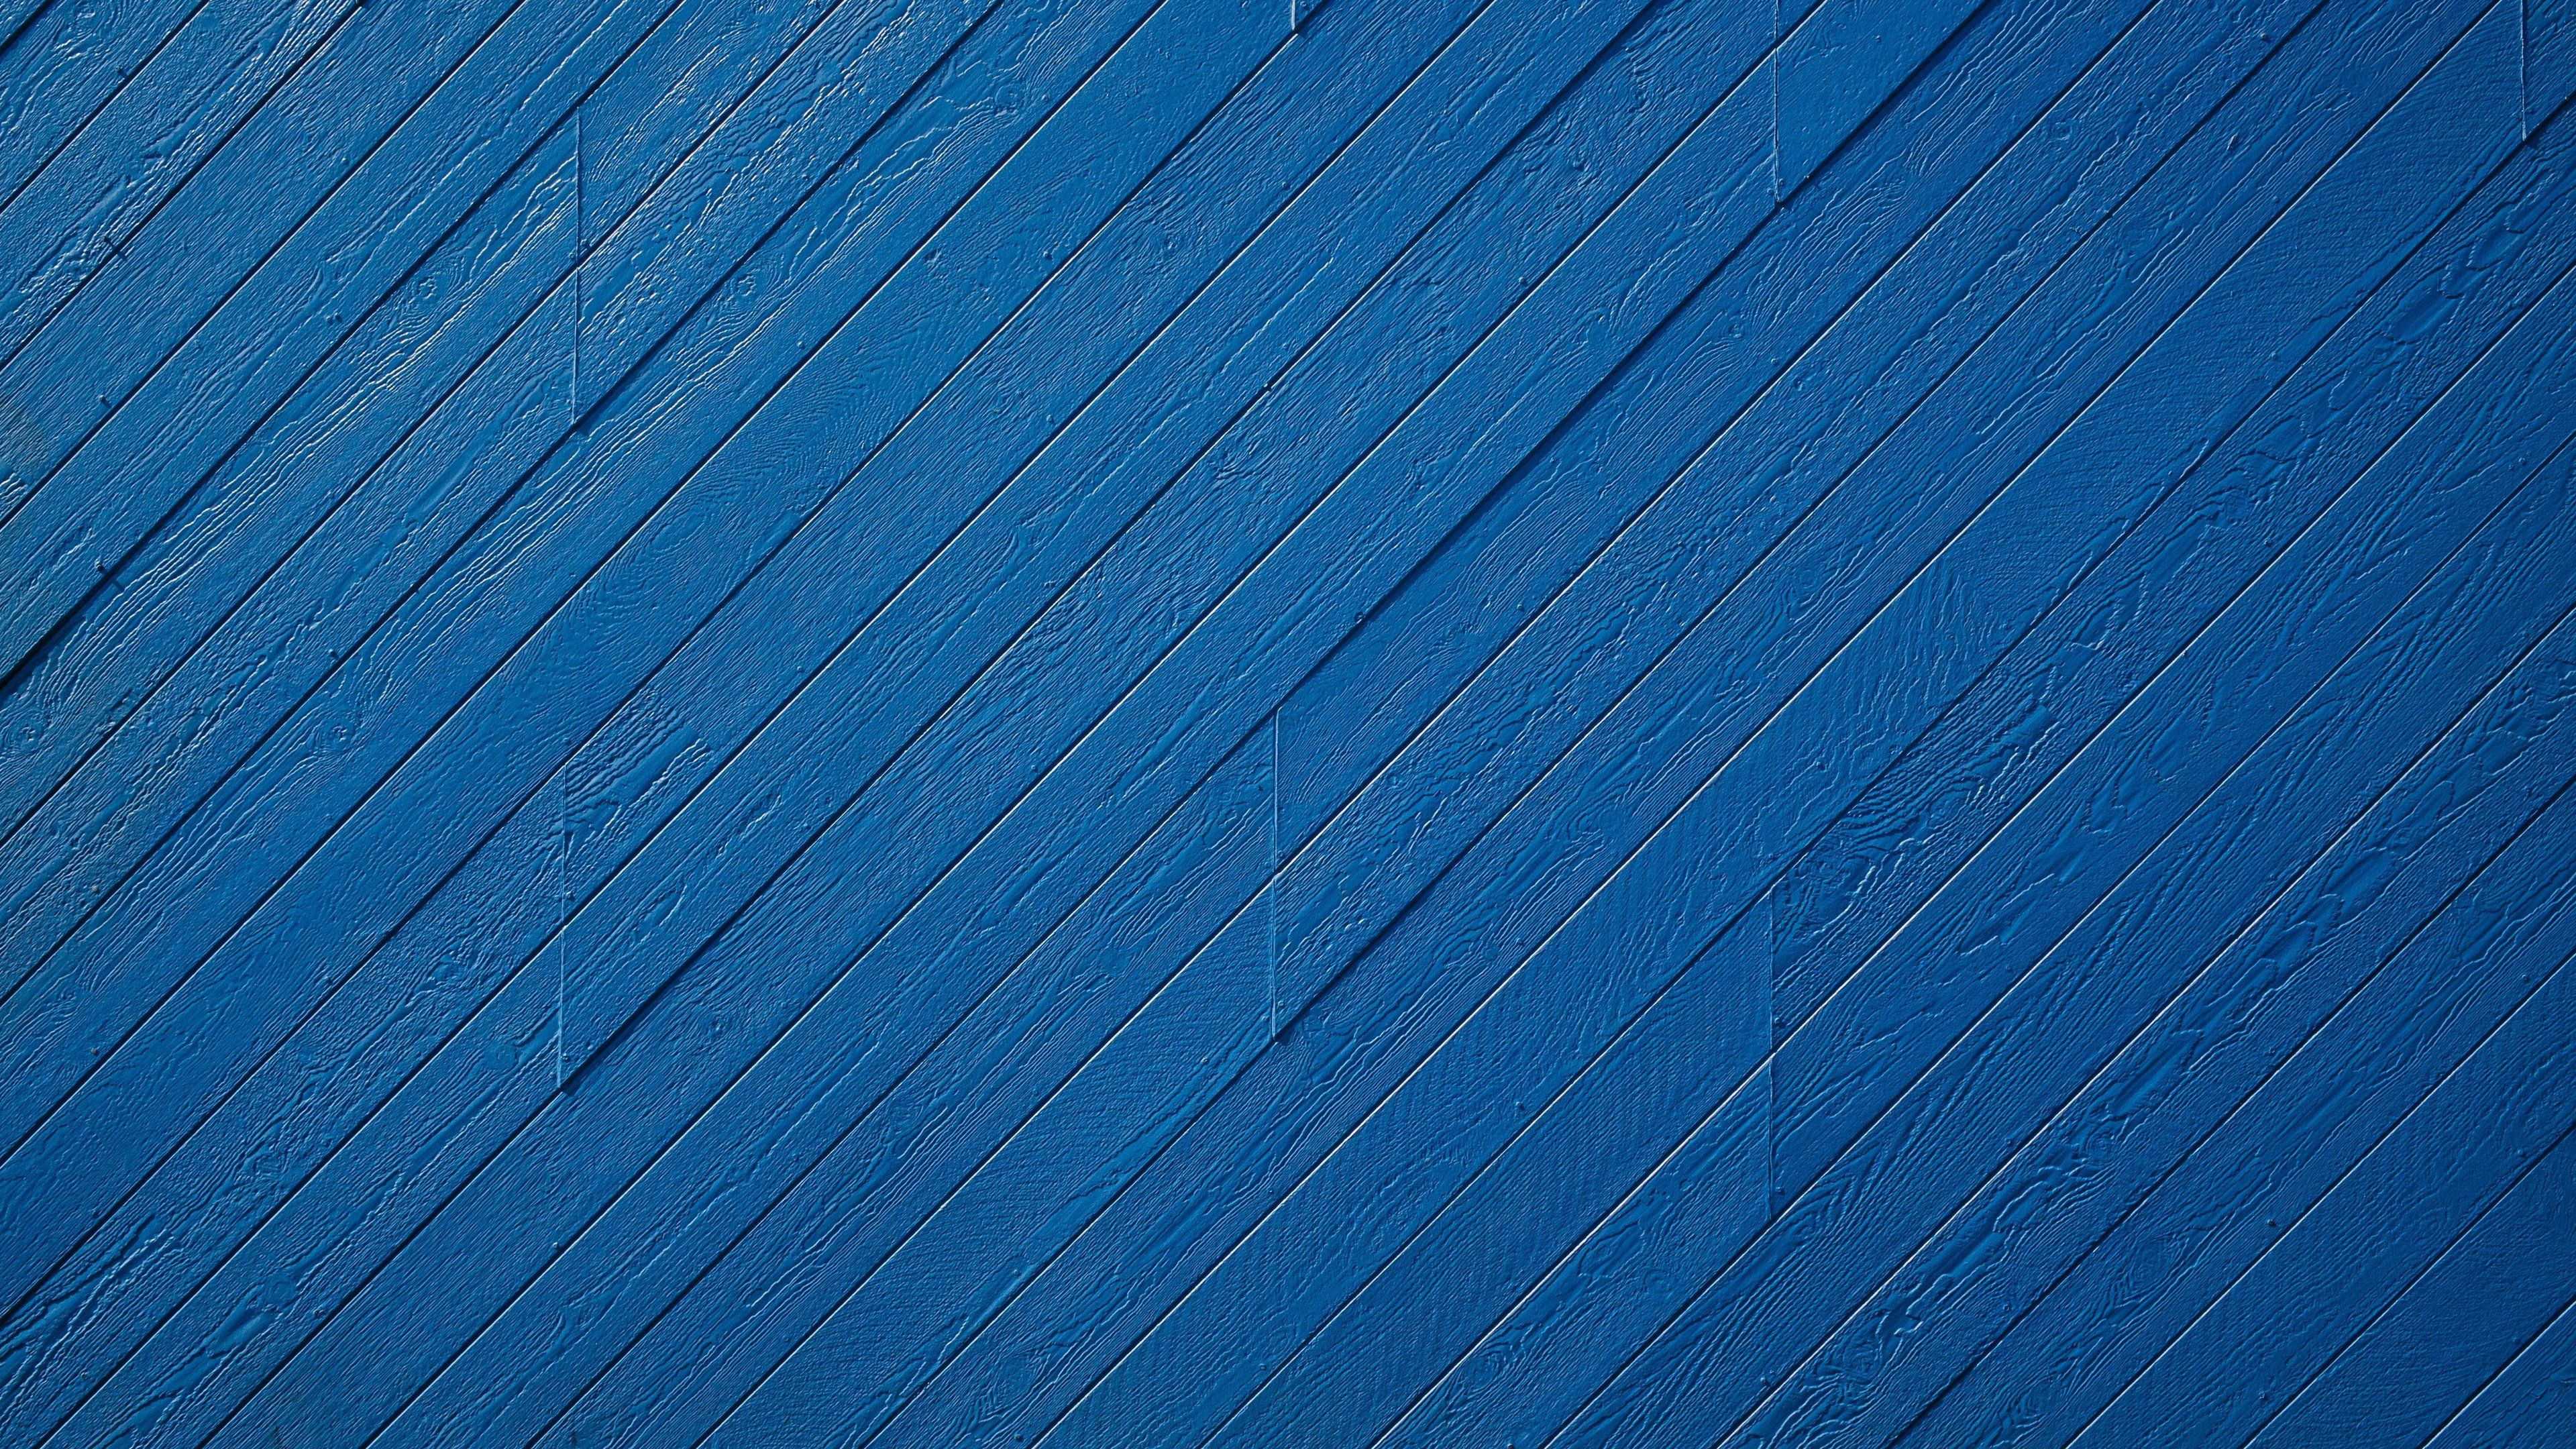 Wallpaper 4k Blue Wood Pattern 4k 4k Wallpaper, Abstract Wallpaper, Digital Art Wallpaper, Hd Wallpaper, Pattern Wallpaper